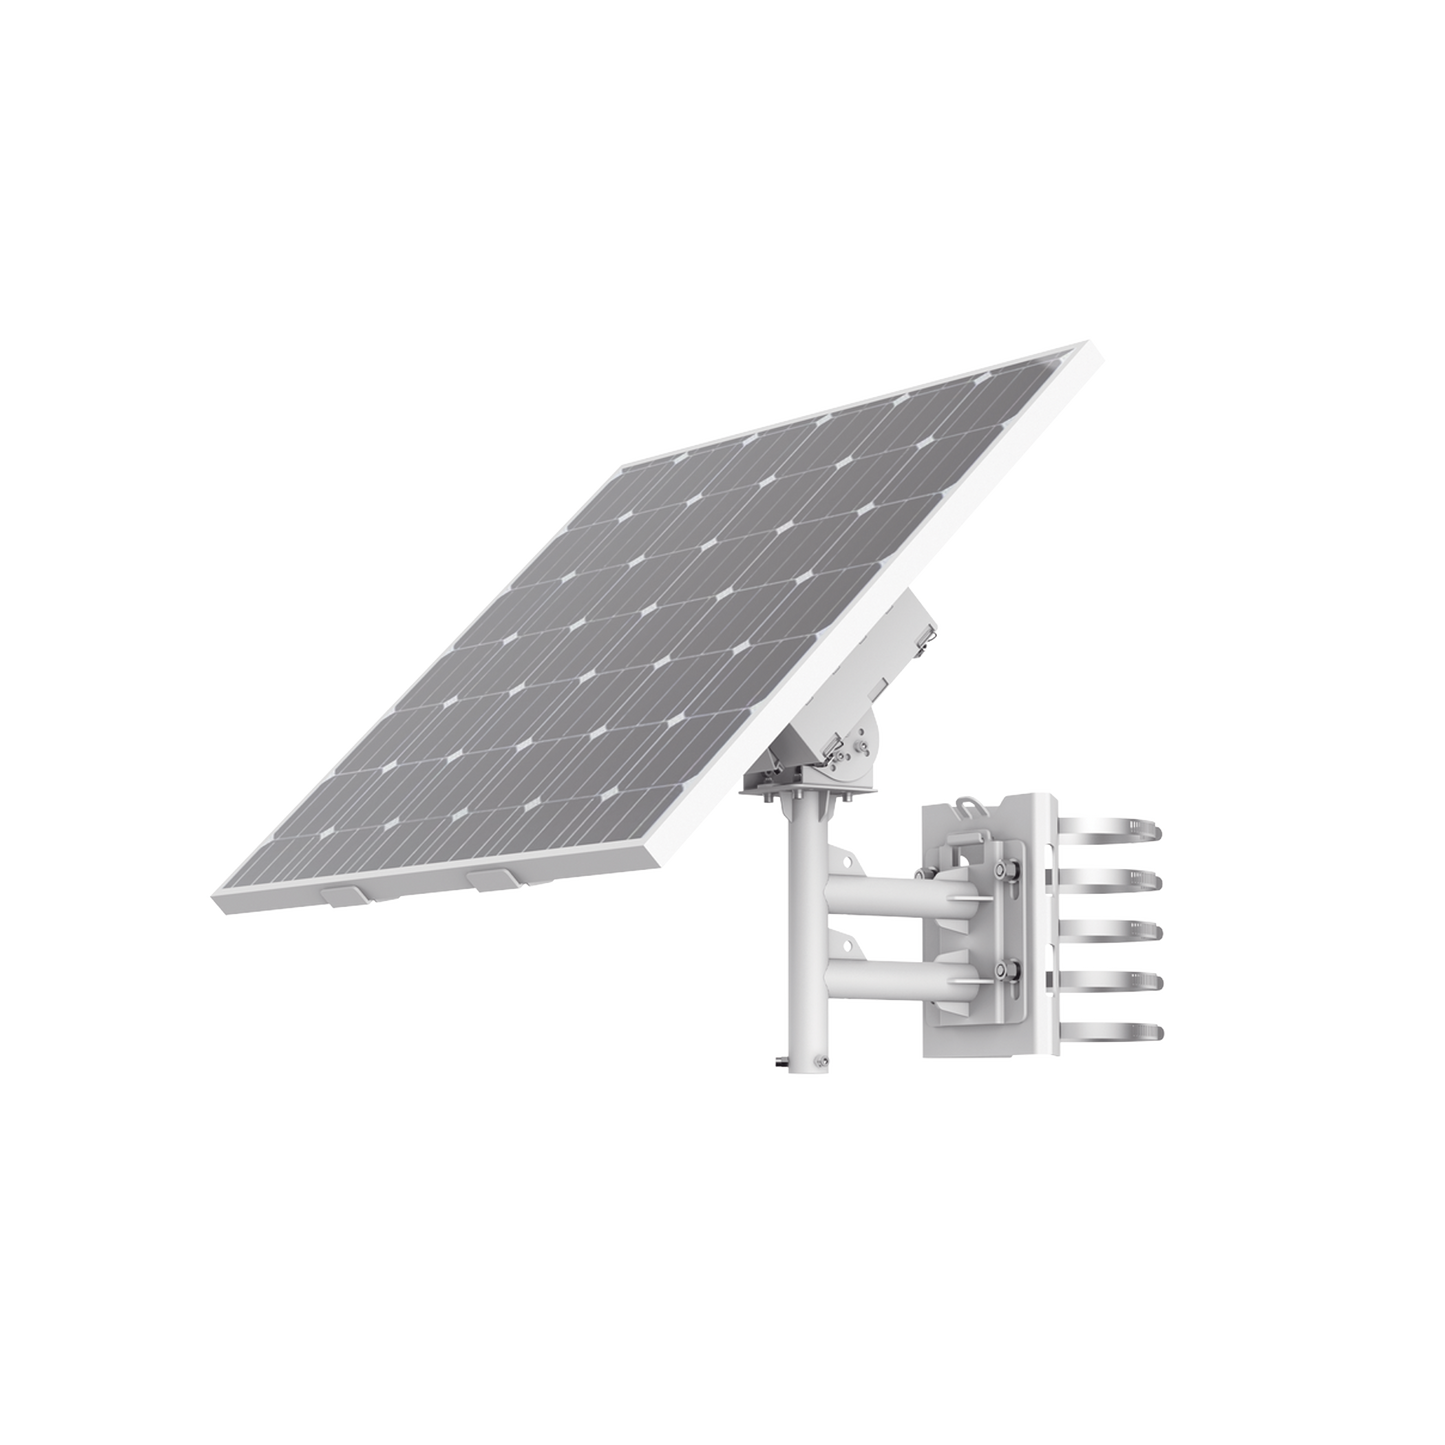 Kit Solar de alimentación / Panel Solar / Batería de Respaldo de Litio 360 Wh / 2 Salidas de 12 Vcd / Accesorios de Instalación / Uso en Exterior IP66